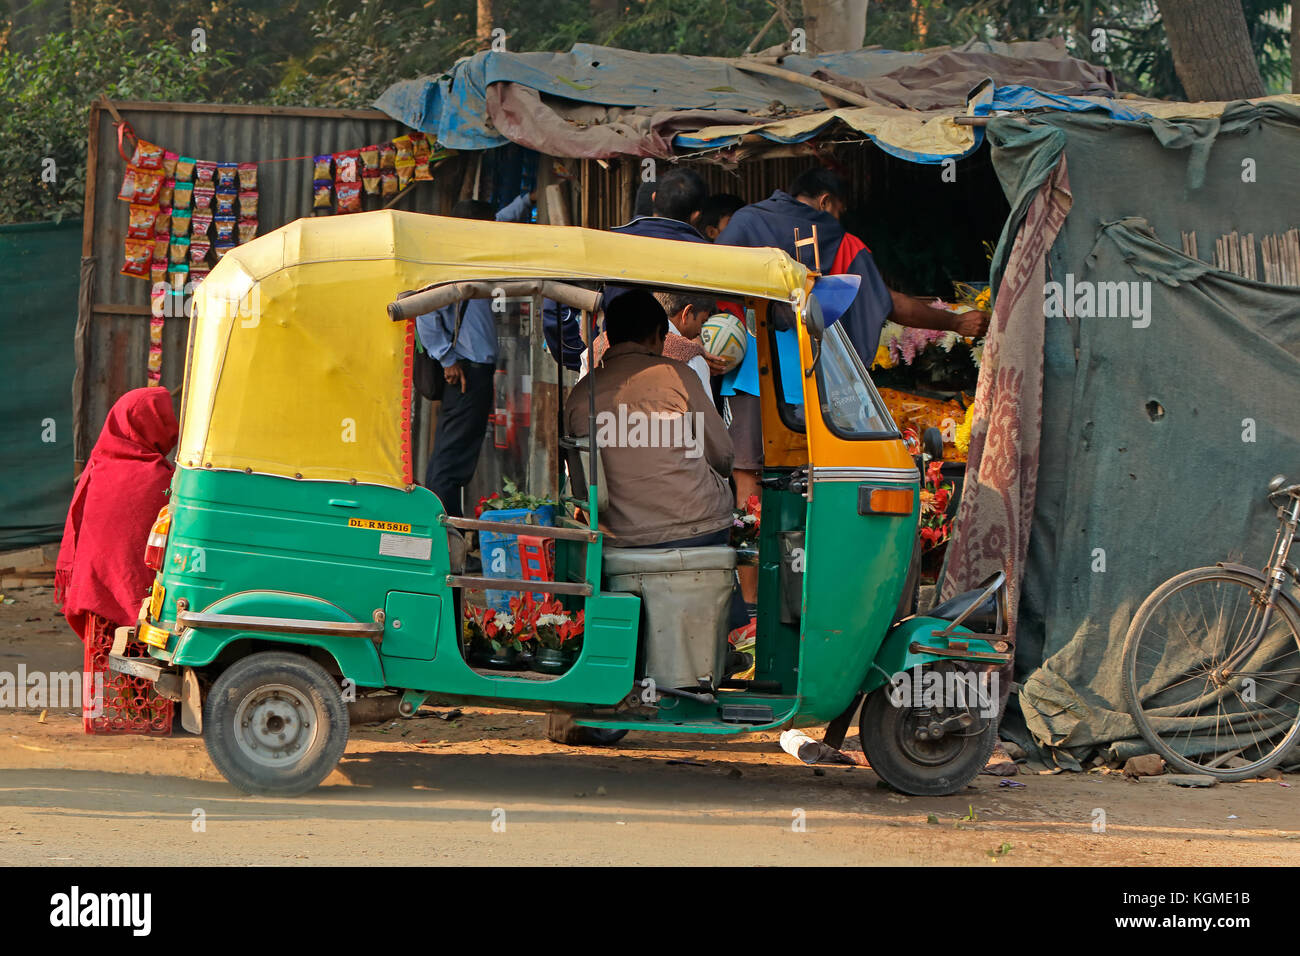 Delhi, India - 24 novembre 2015: venditori ambulanti e un tuk-tuk veicolo che è tipico delle strade affollate di vecchia Delhi Foto Stock